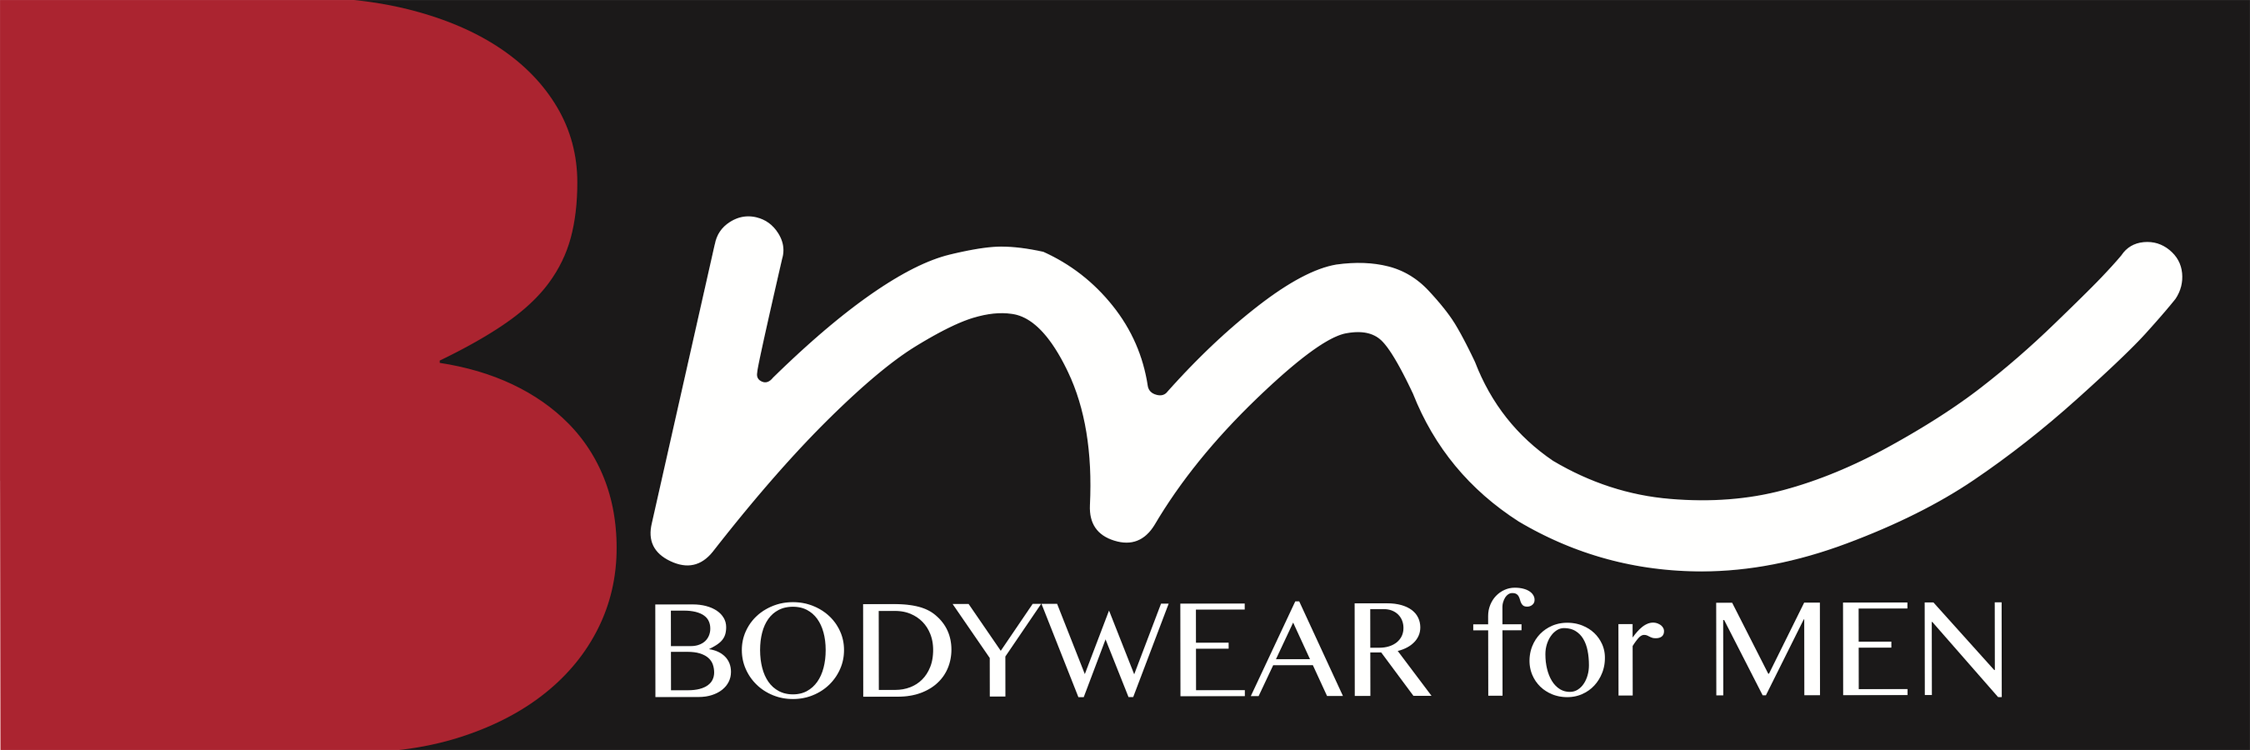 N2N BODYWEAR MEN'S Sheer FP2 Flower Power Net Bikini Underwear